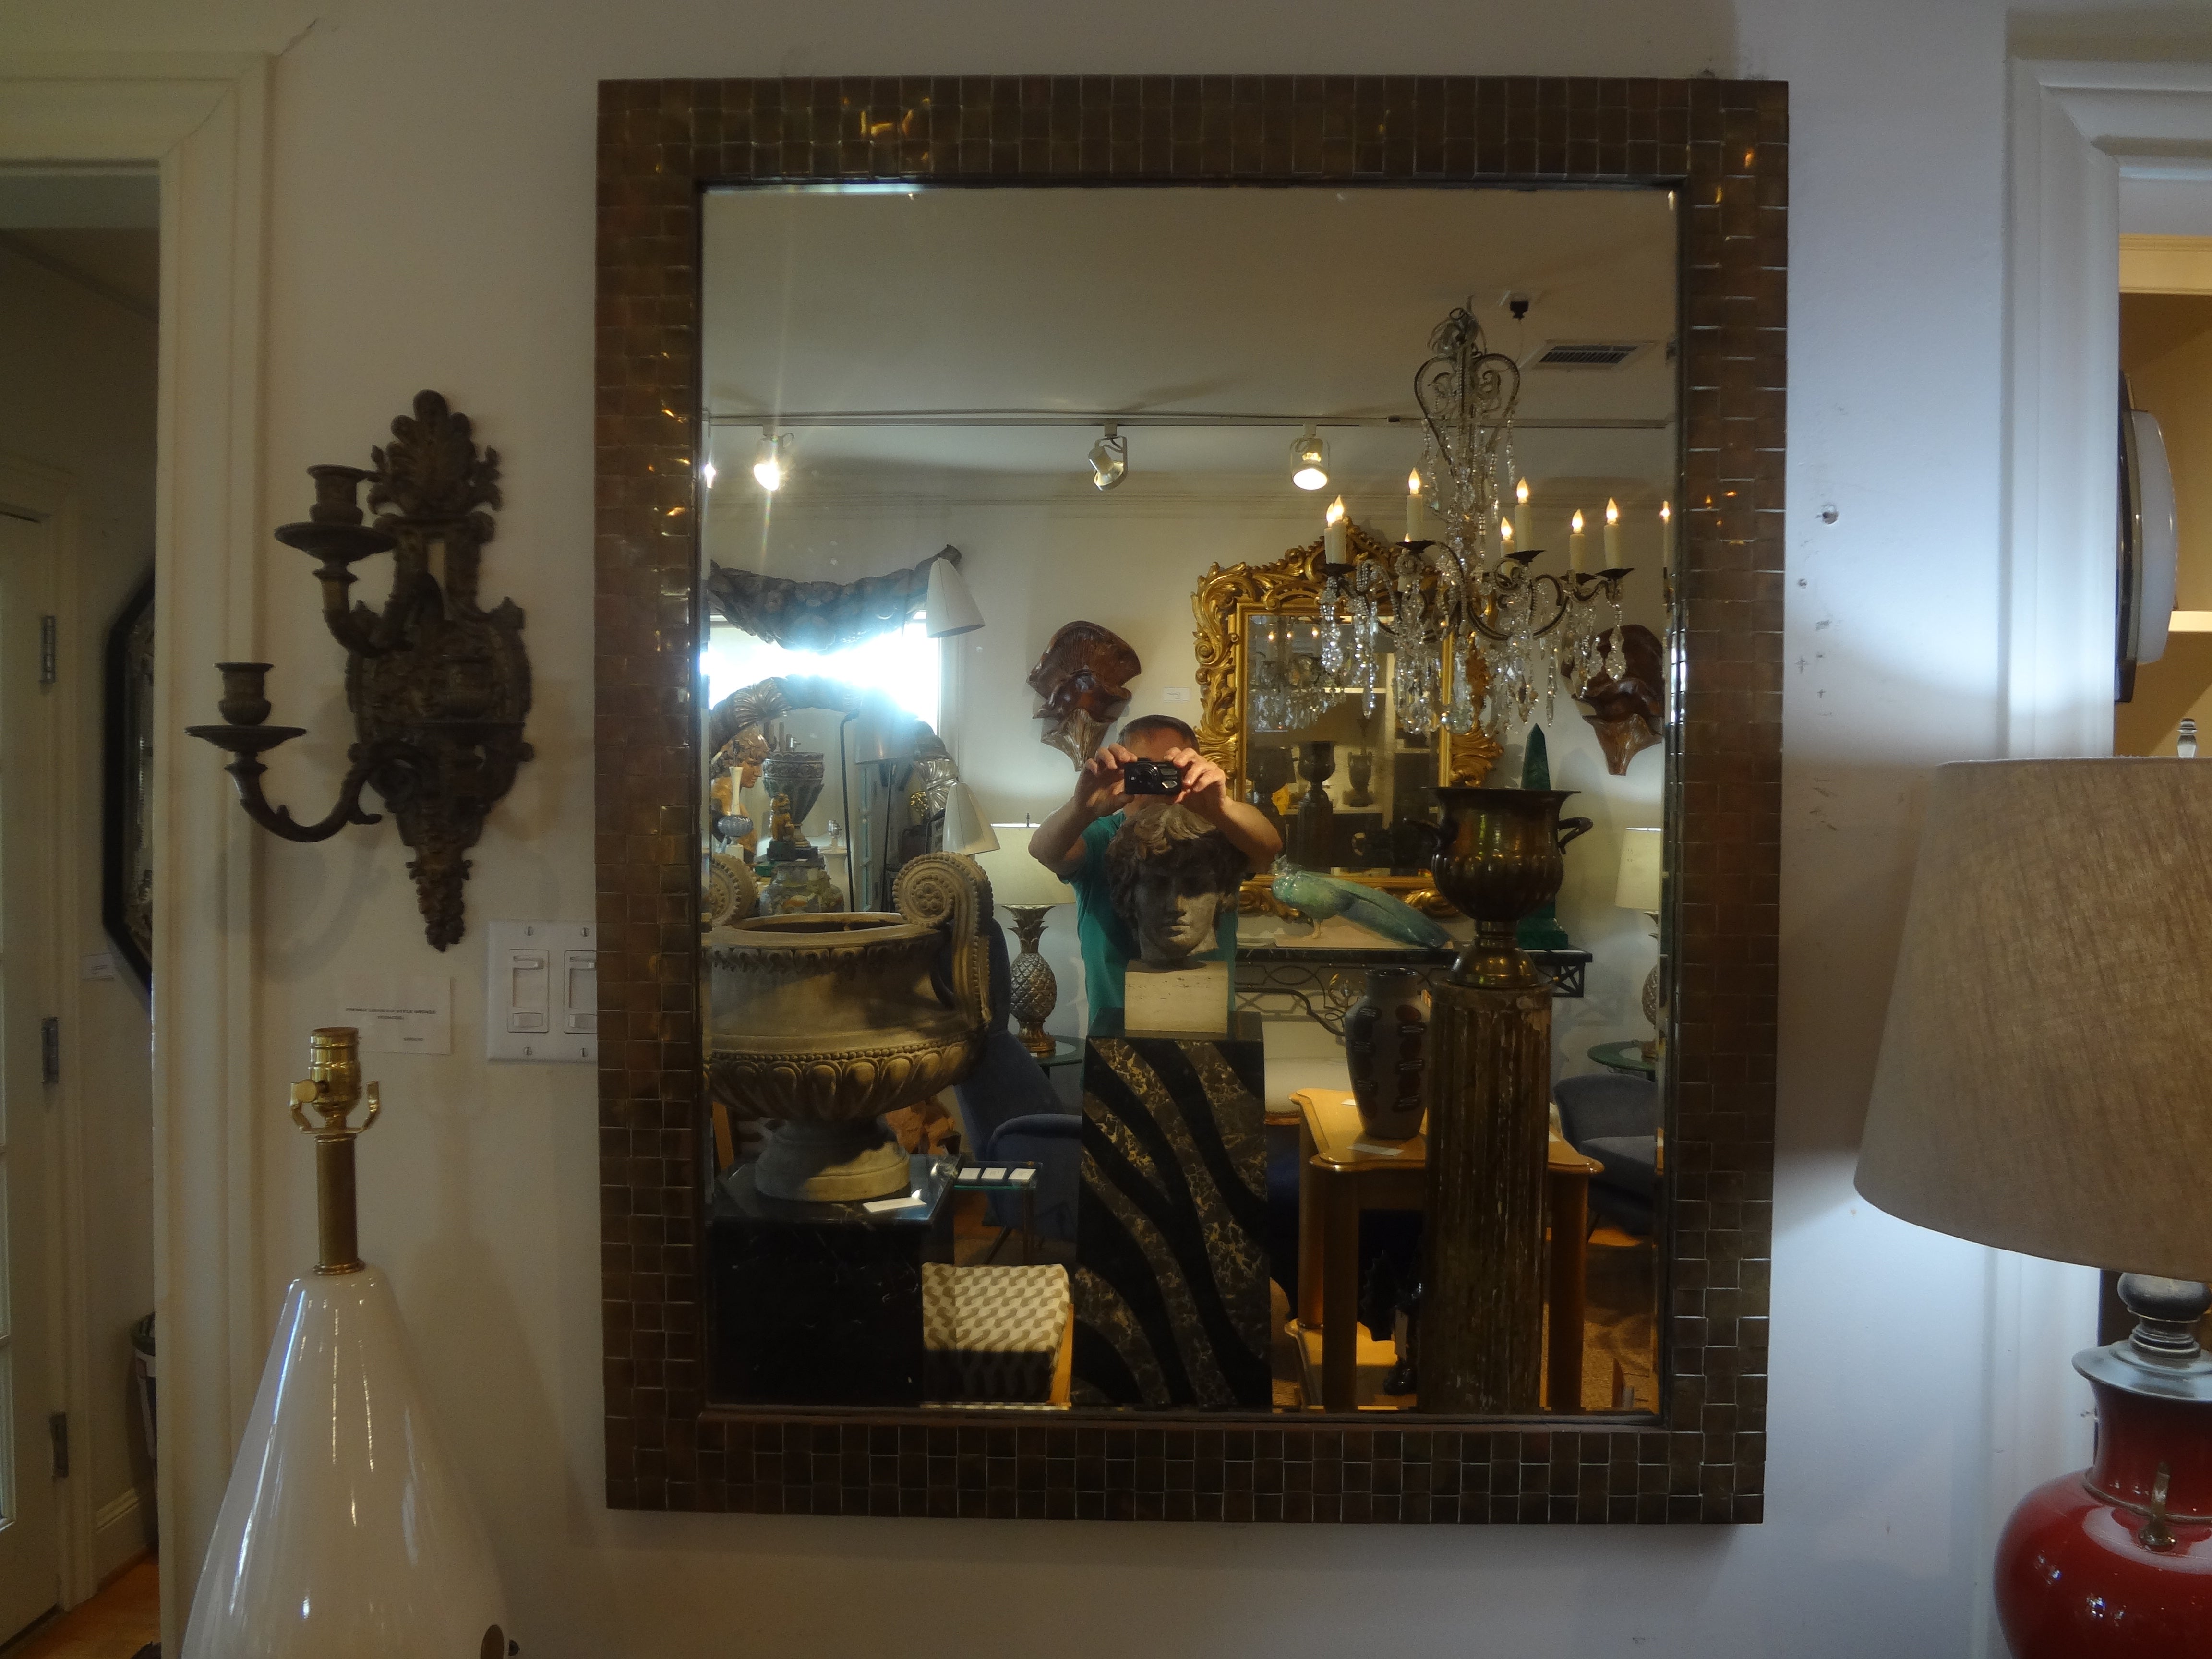 Miroir biseauté en laiton tressé italien.
Magnifique miroir italien en laiton tressé, circa. 1970.
Ce miroir polyvalent en laiton italien conviendrait à de nombreuses pièces et intérieurs.
Ce superbe miroir peut être exposé verticalement ou